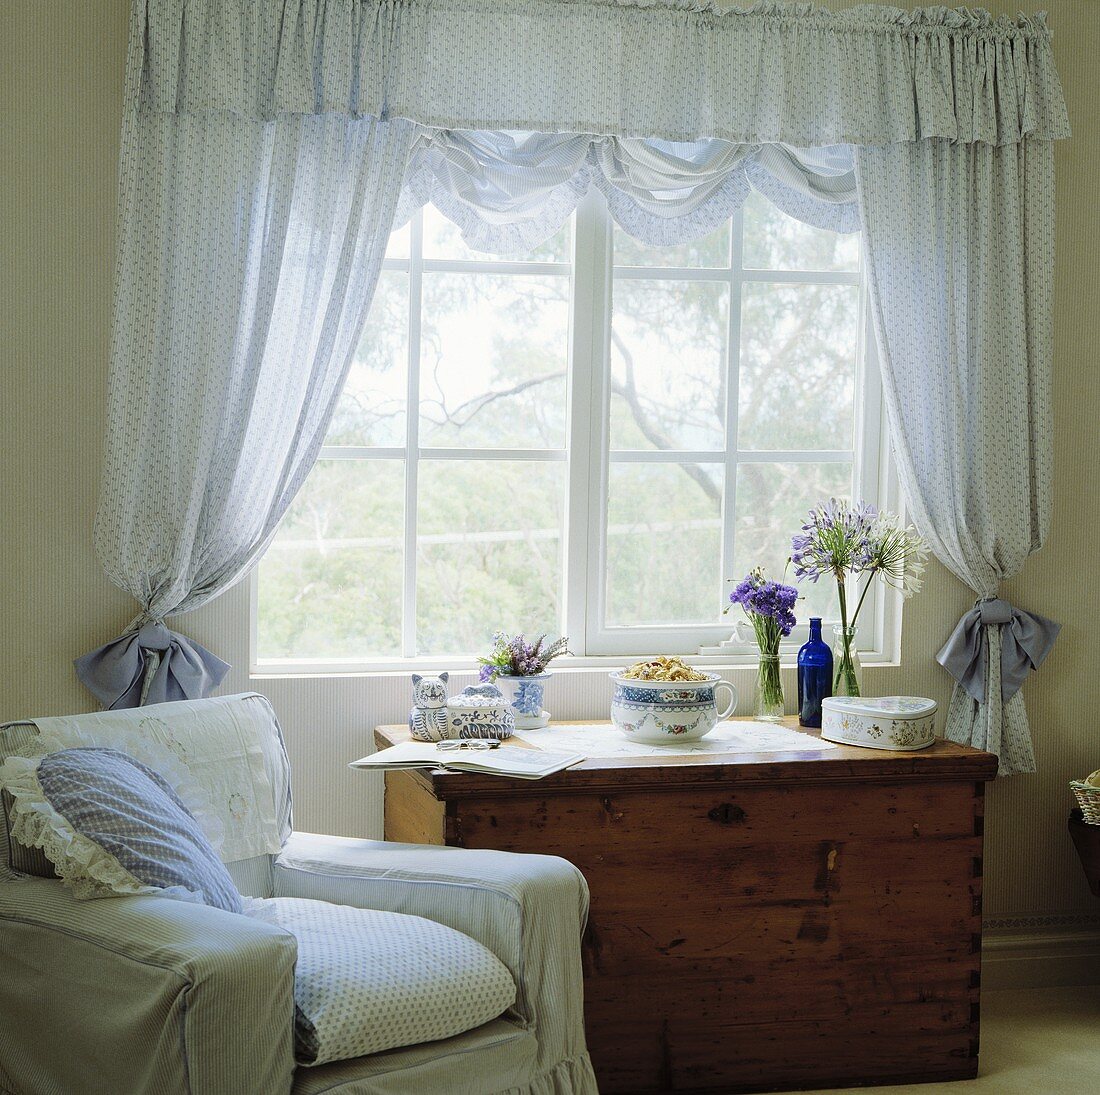 Weisser Sessel und eine Truhe neben dem Fenster mit Voile-Vorhängen